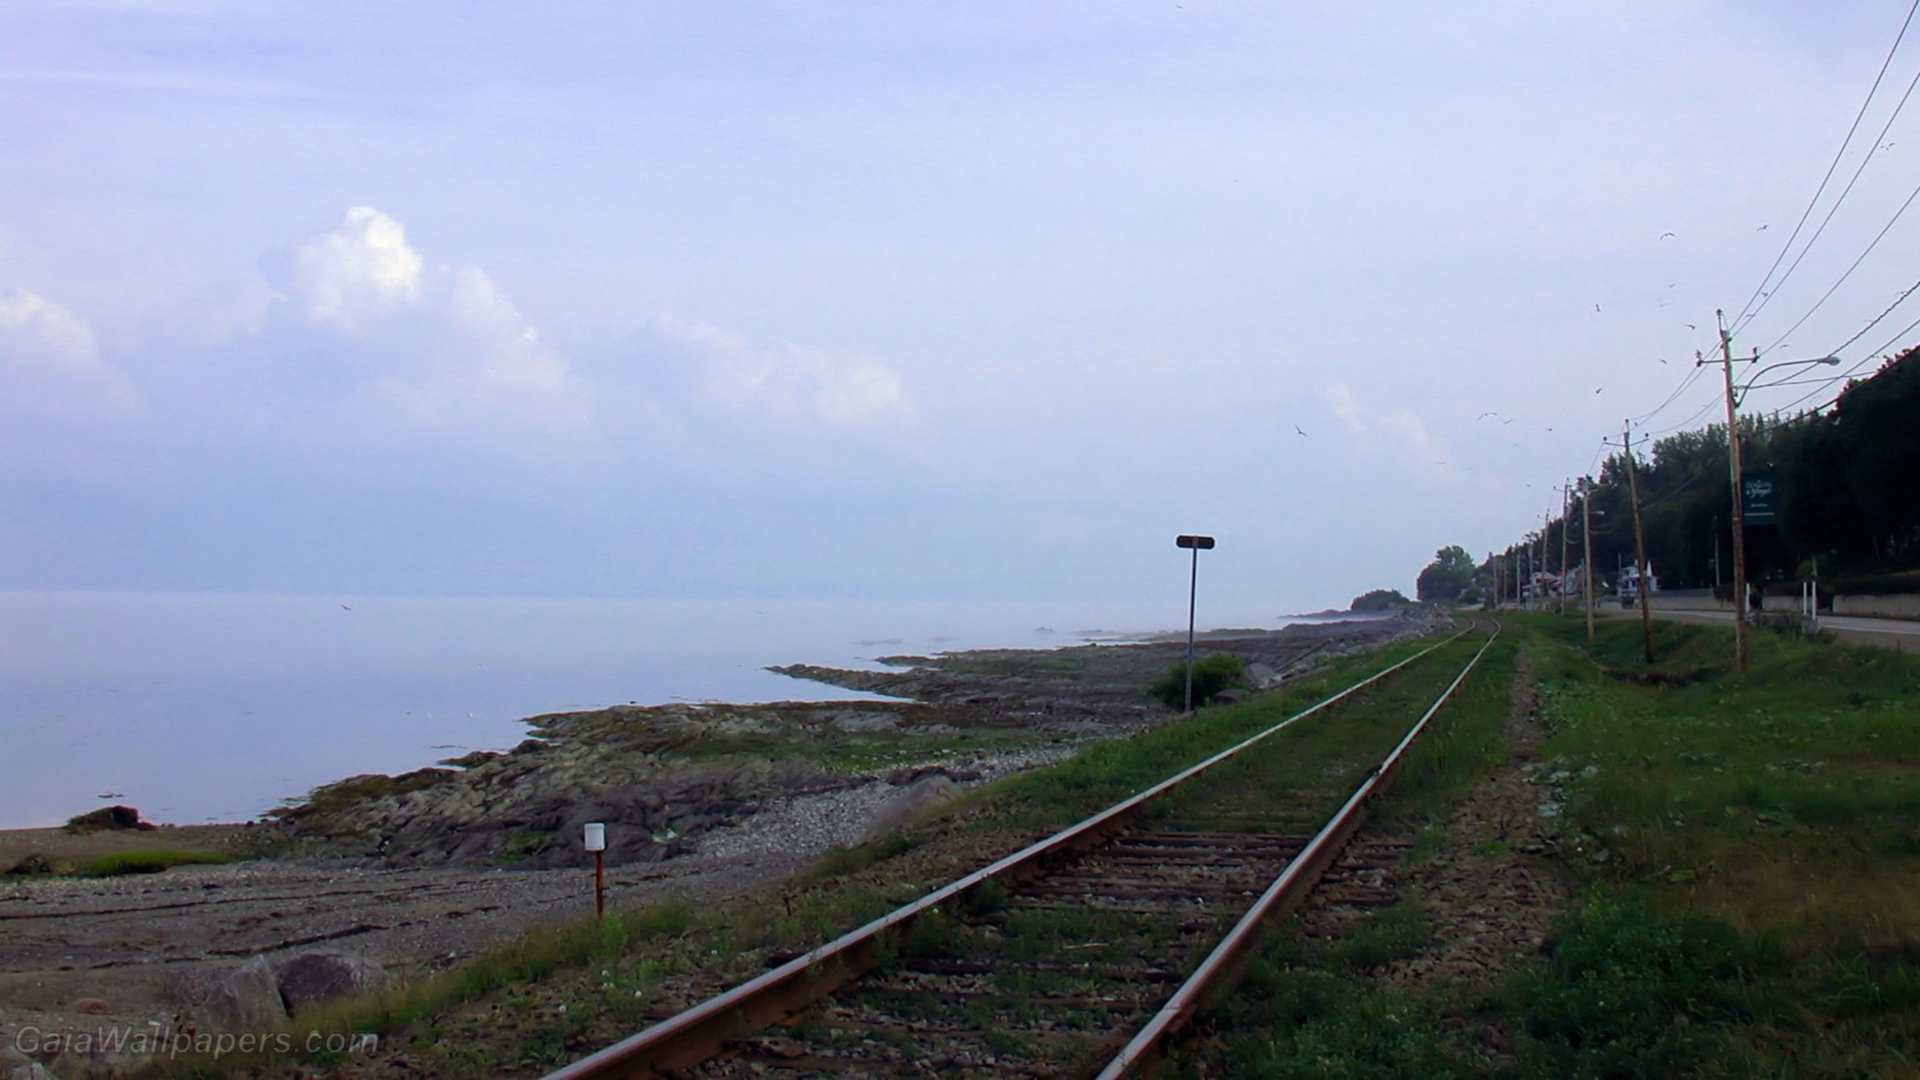 Chemin de fer près du fleuve St-Laurent brumeux - Fonds d'écran gratuits